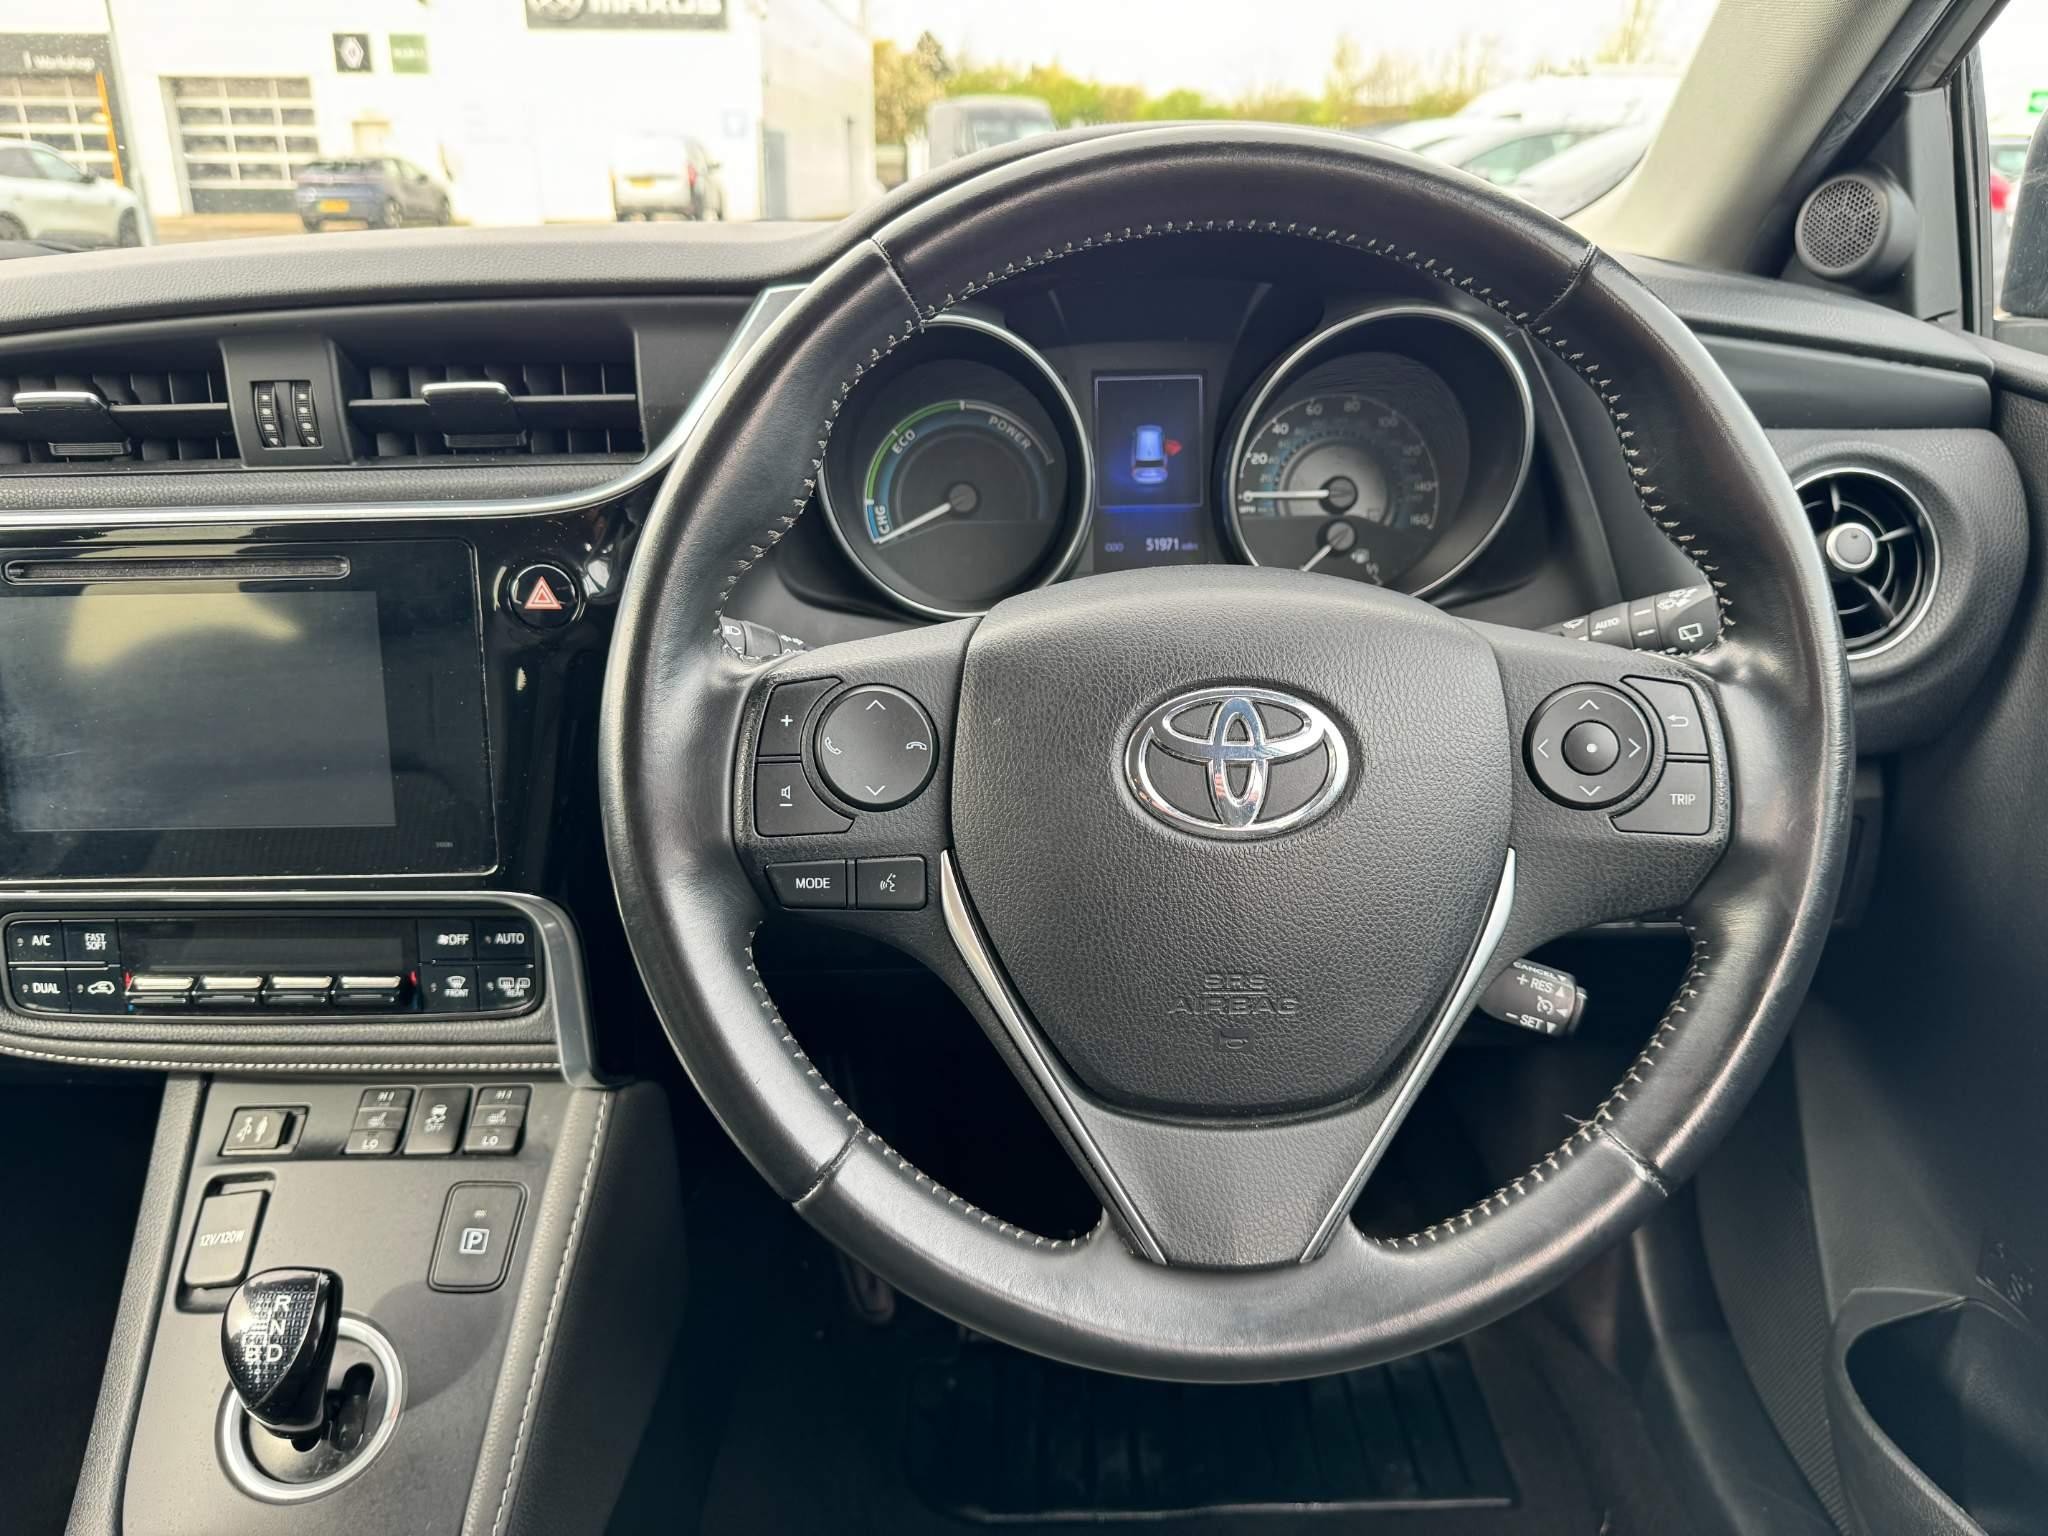 Toyota Auris 1.8 VVT-h Excel Touring Sports CVT Euro 6 (s/s) 5dr (FE16FWM) image 16